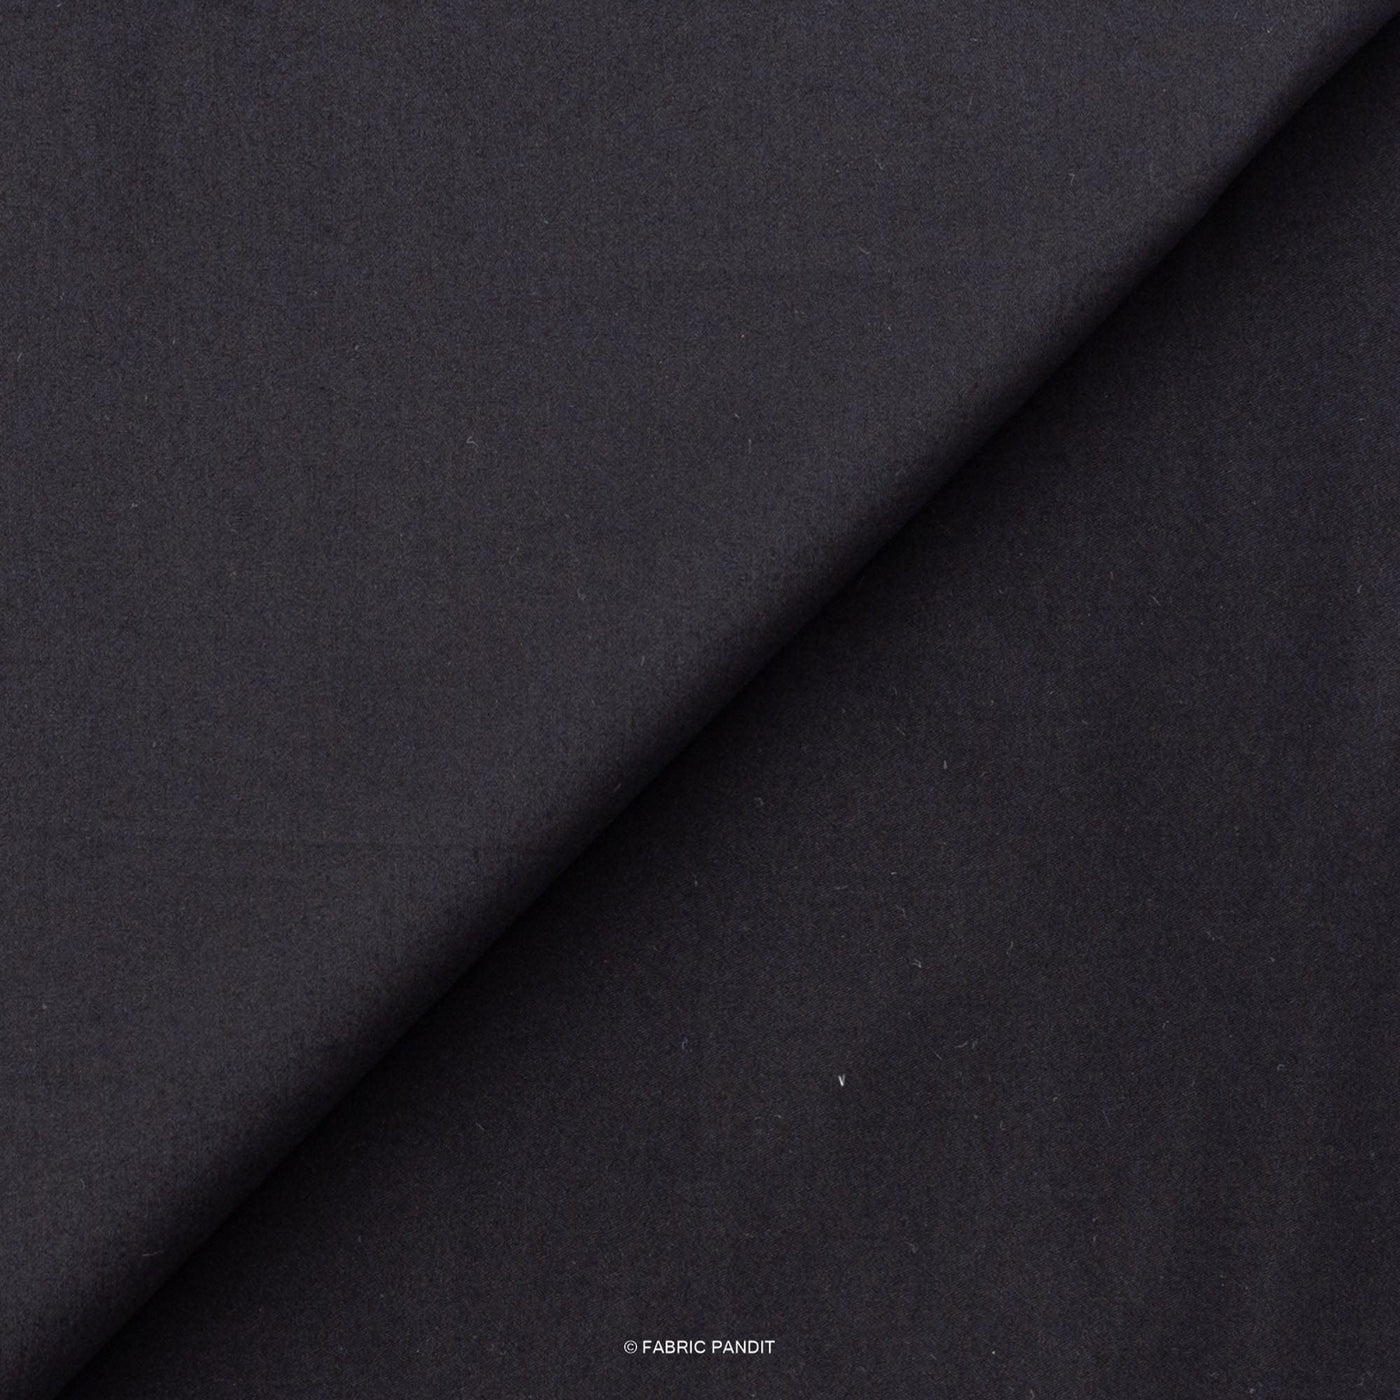 Fabric Pandit Shirt Carbon Black Premium Cotton Lycra Stretch Unstitched Men's Shirt Piece (Width 54 Inch | 1.60 Meters)